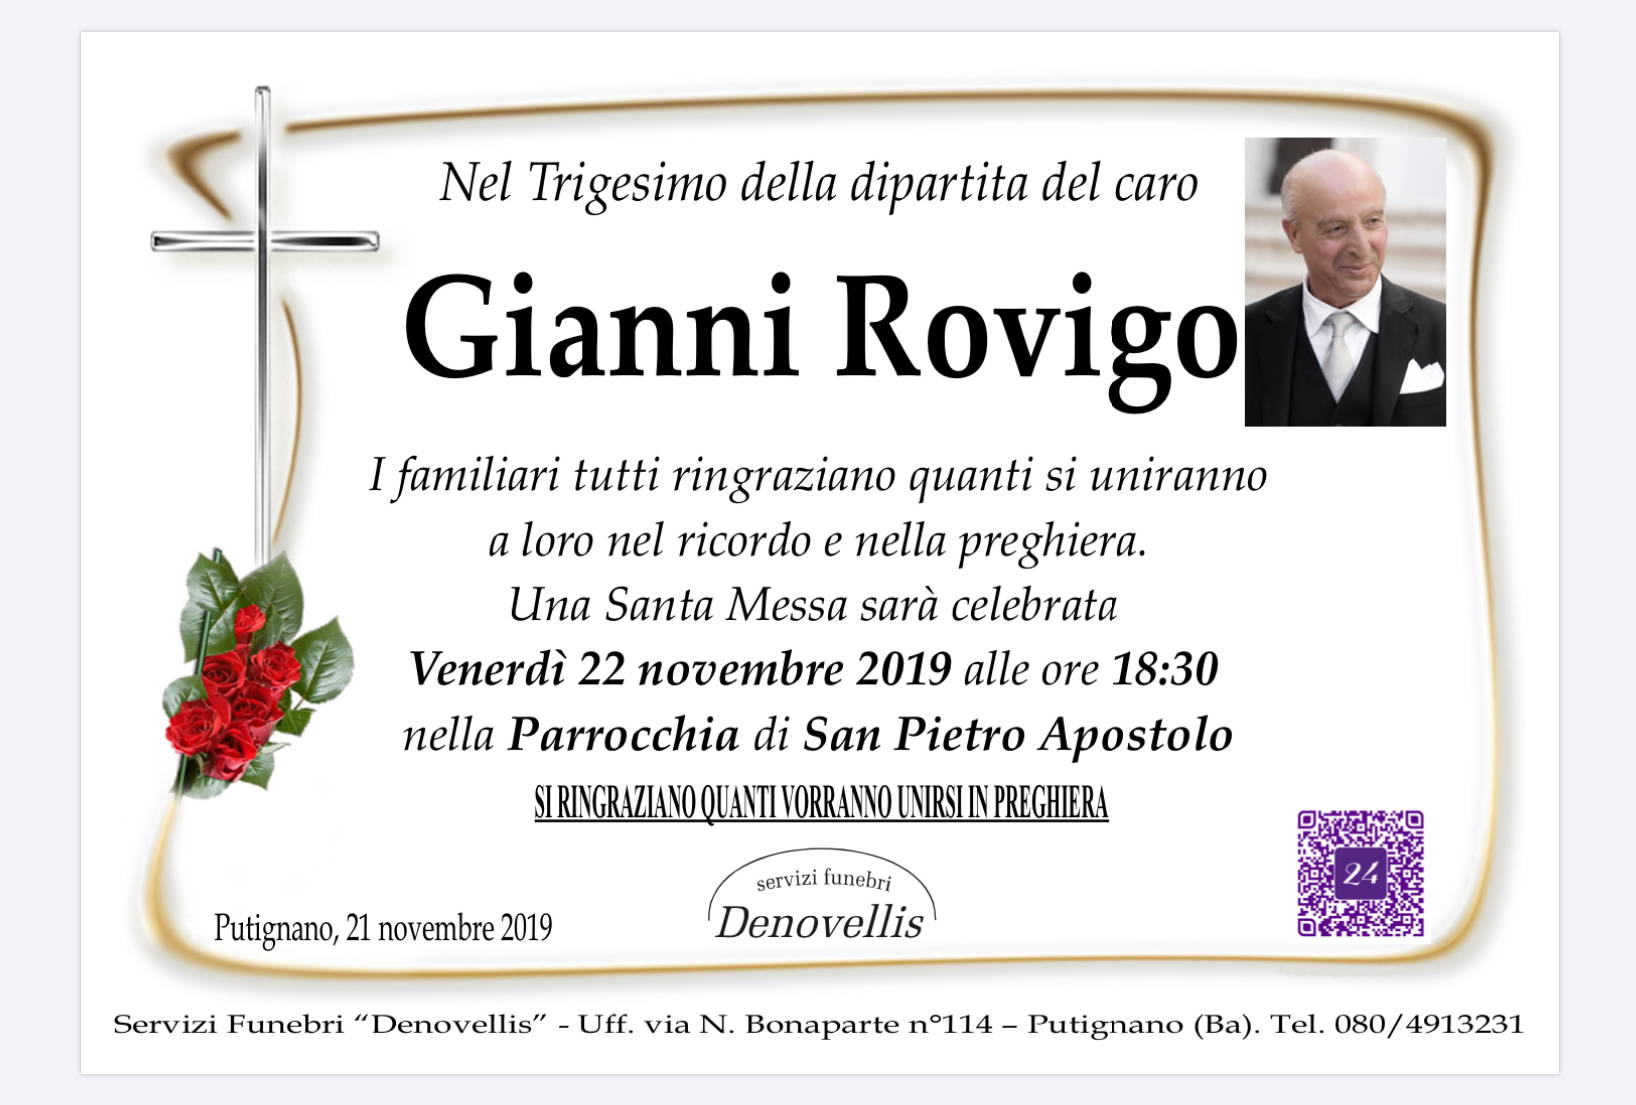 Gianni Rovigo